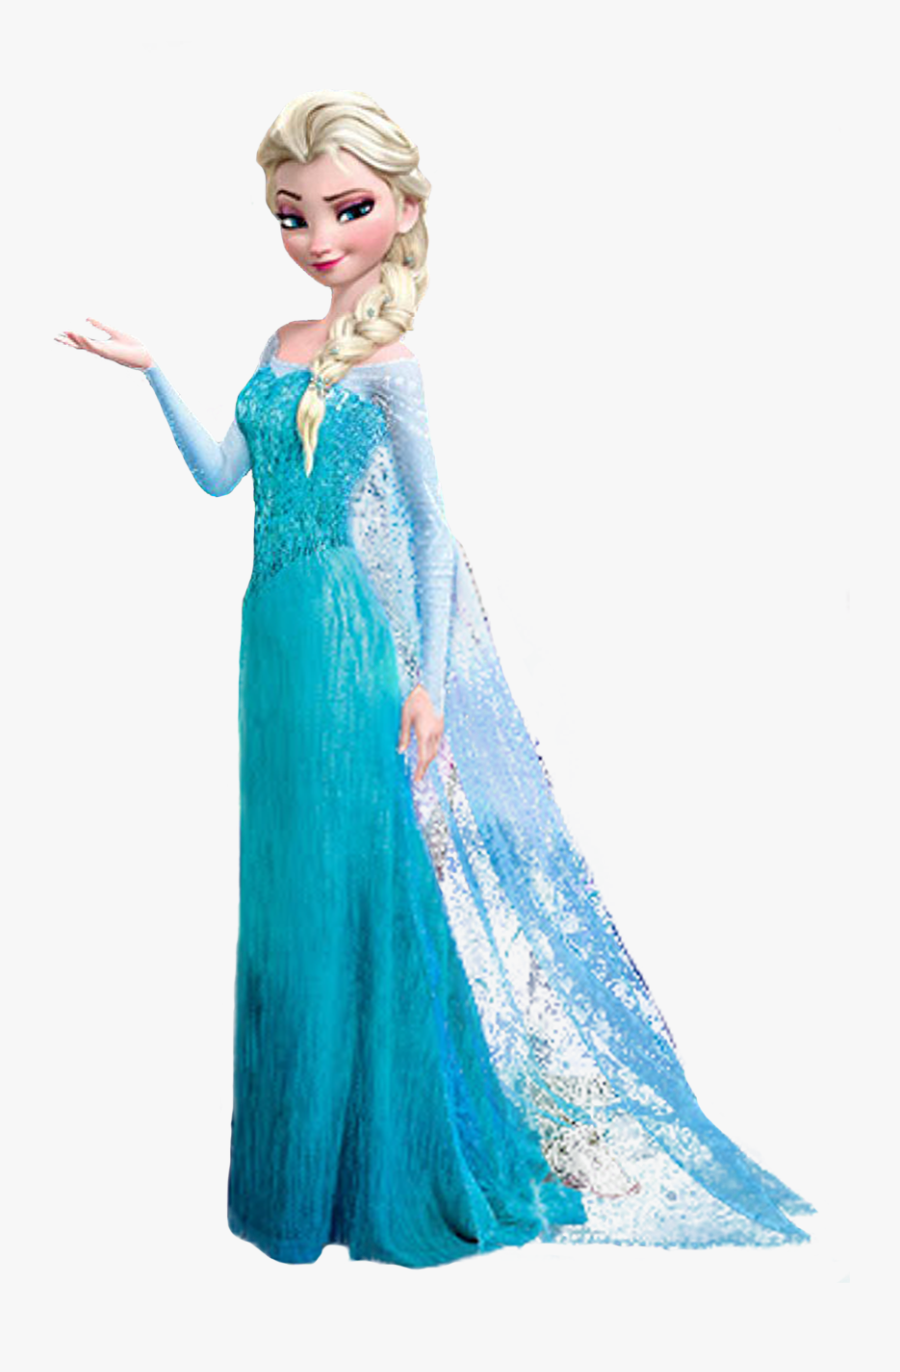 Thumb Image - Elsa Frozen Png, Transparent Clipart